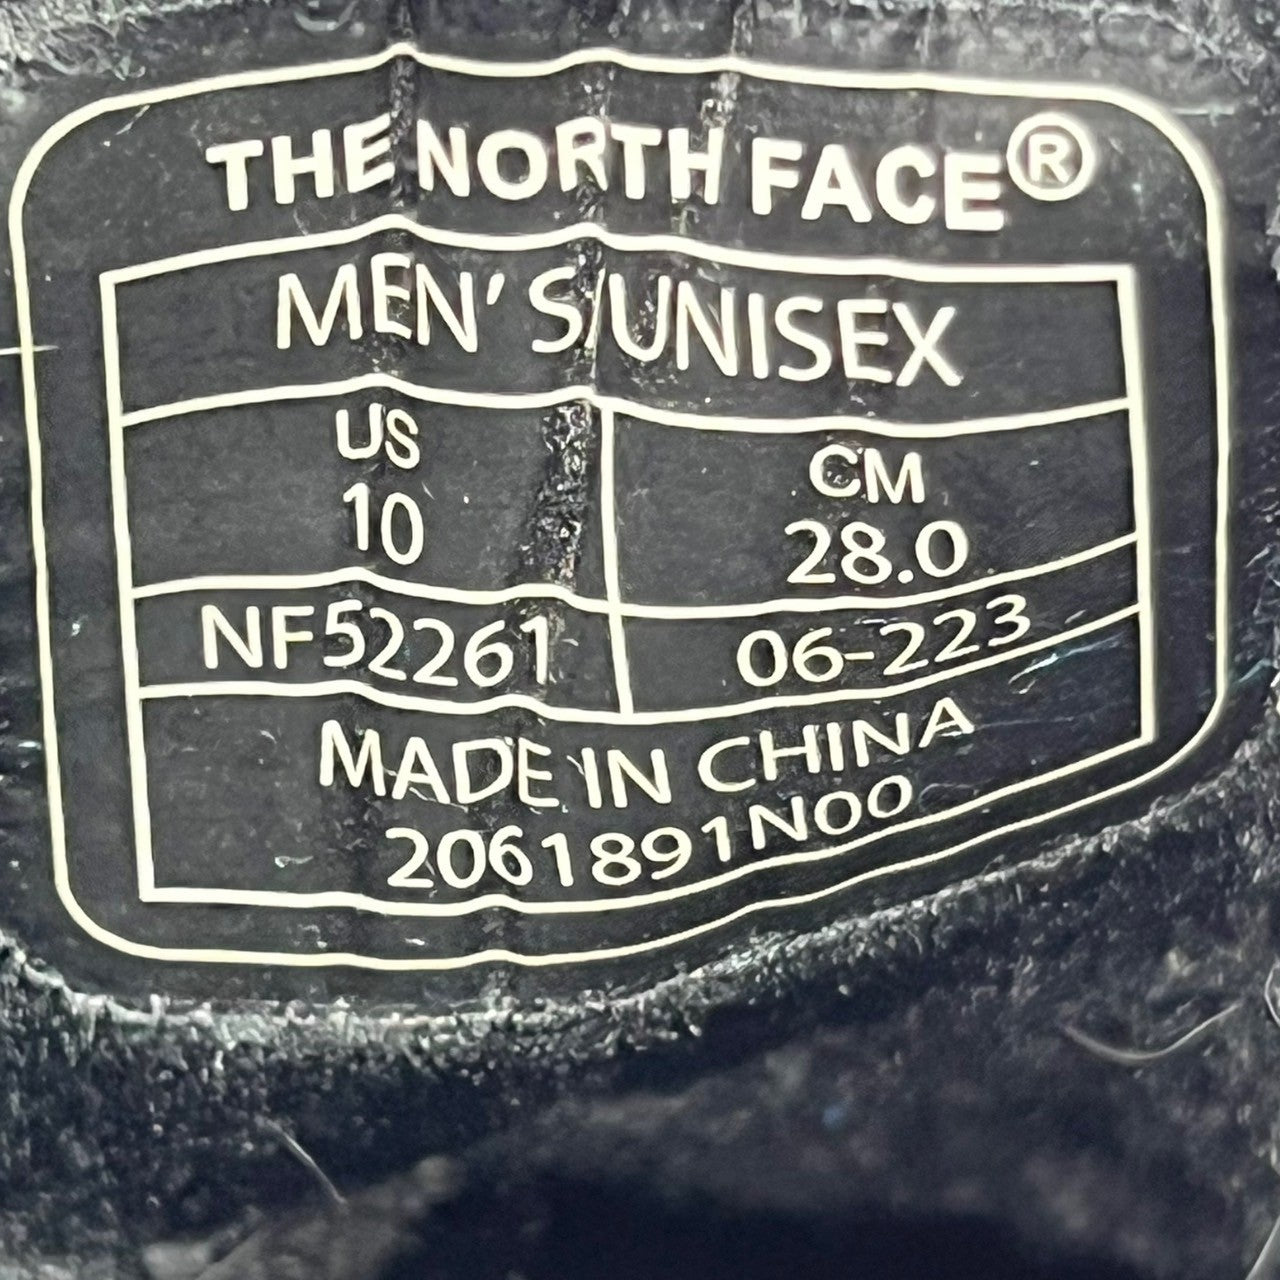 THE NORTH FACE(ザノースフェイス) Decade GORE-TEX Moccasin ディケード ゴアテックス モカシン チロリアン シューズ ゴアテックス NF52261 SIZE 28cm ブラック